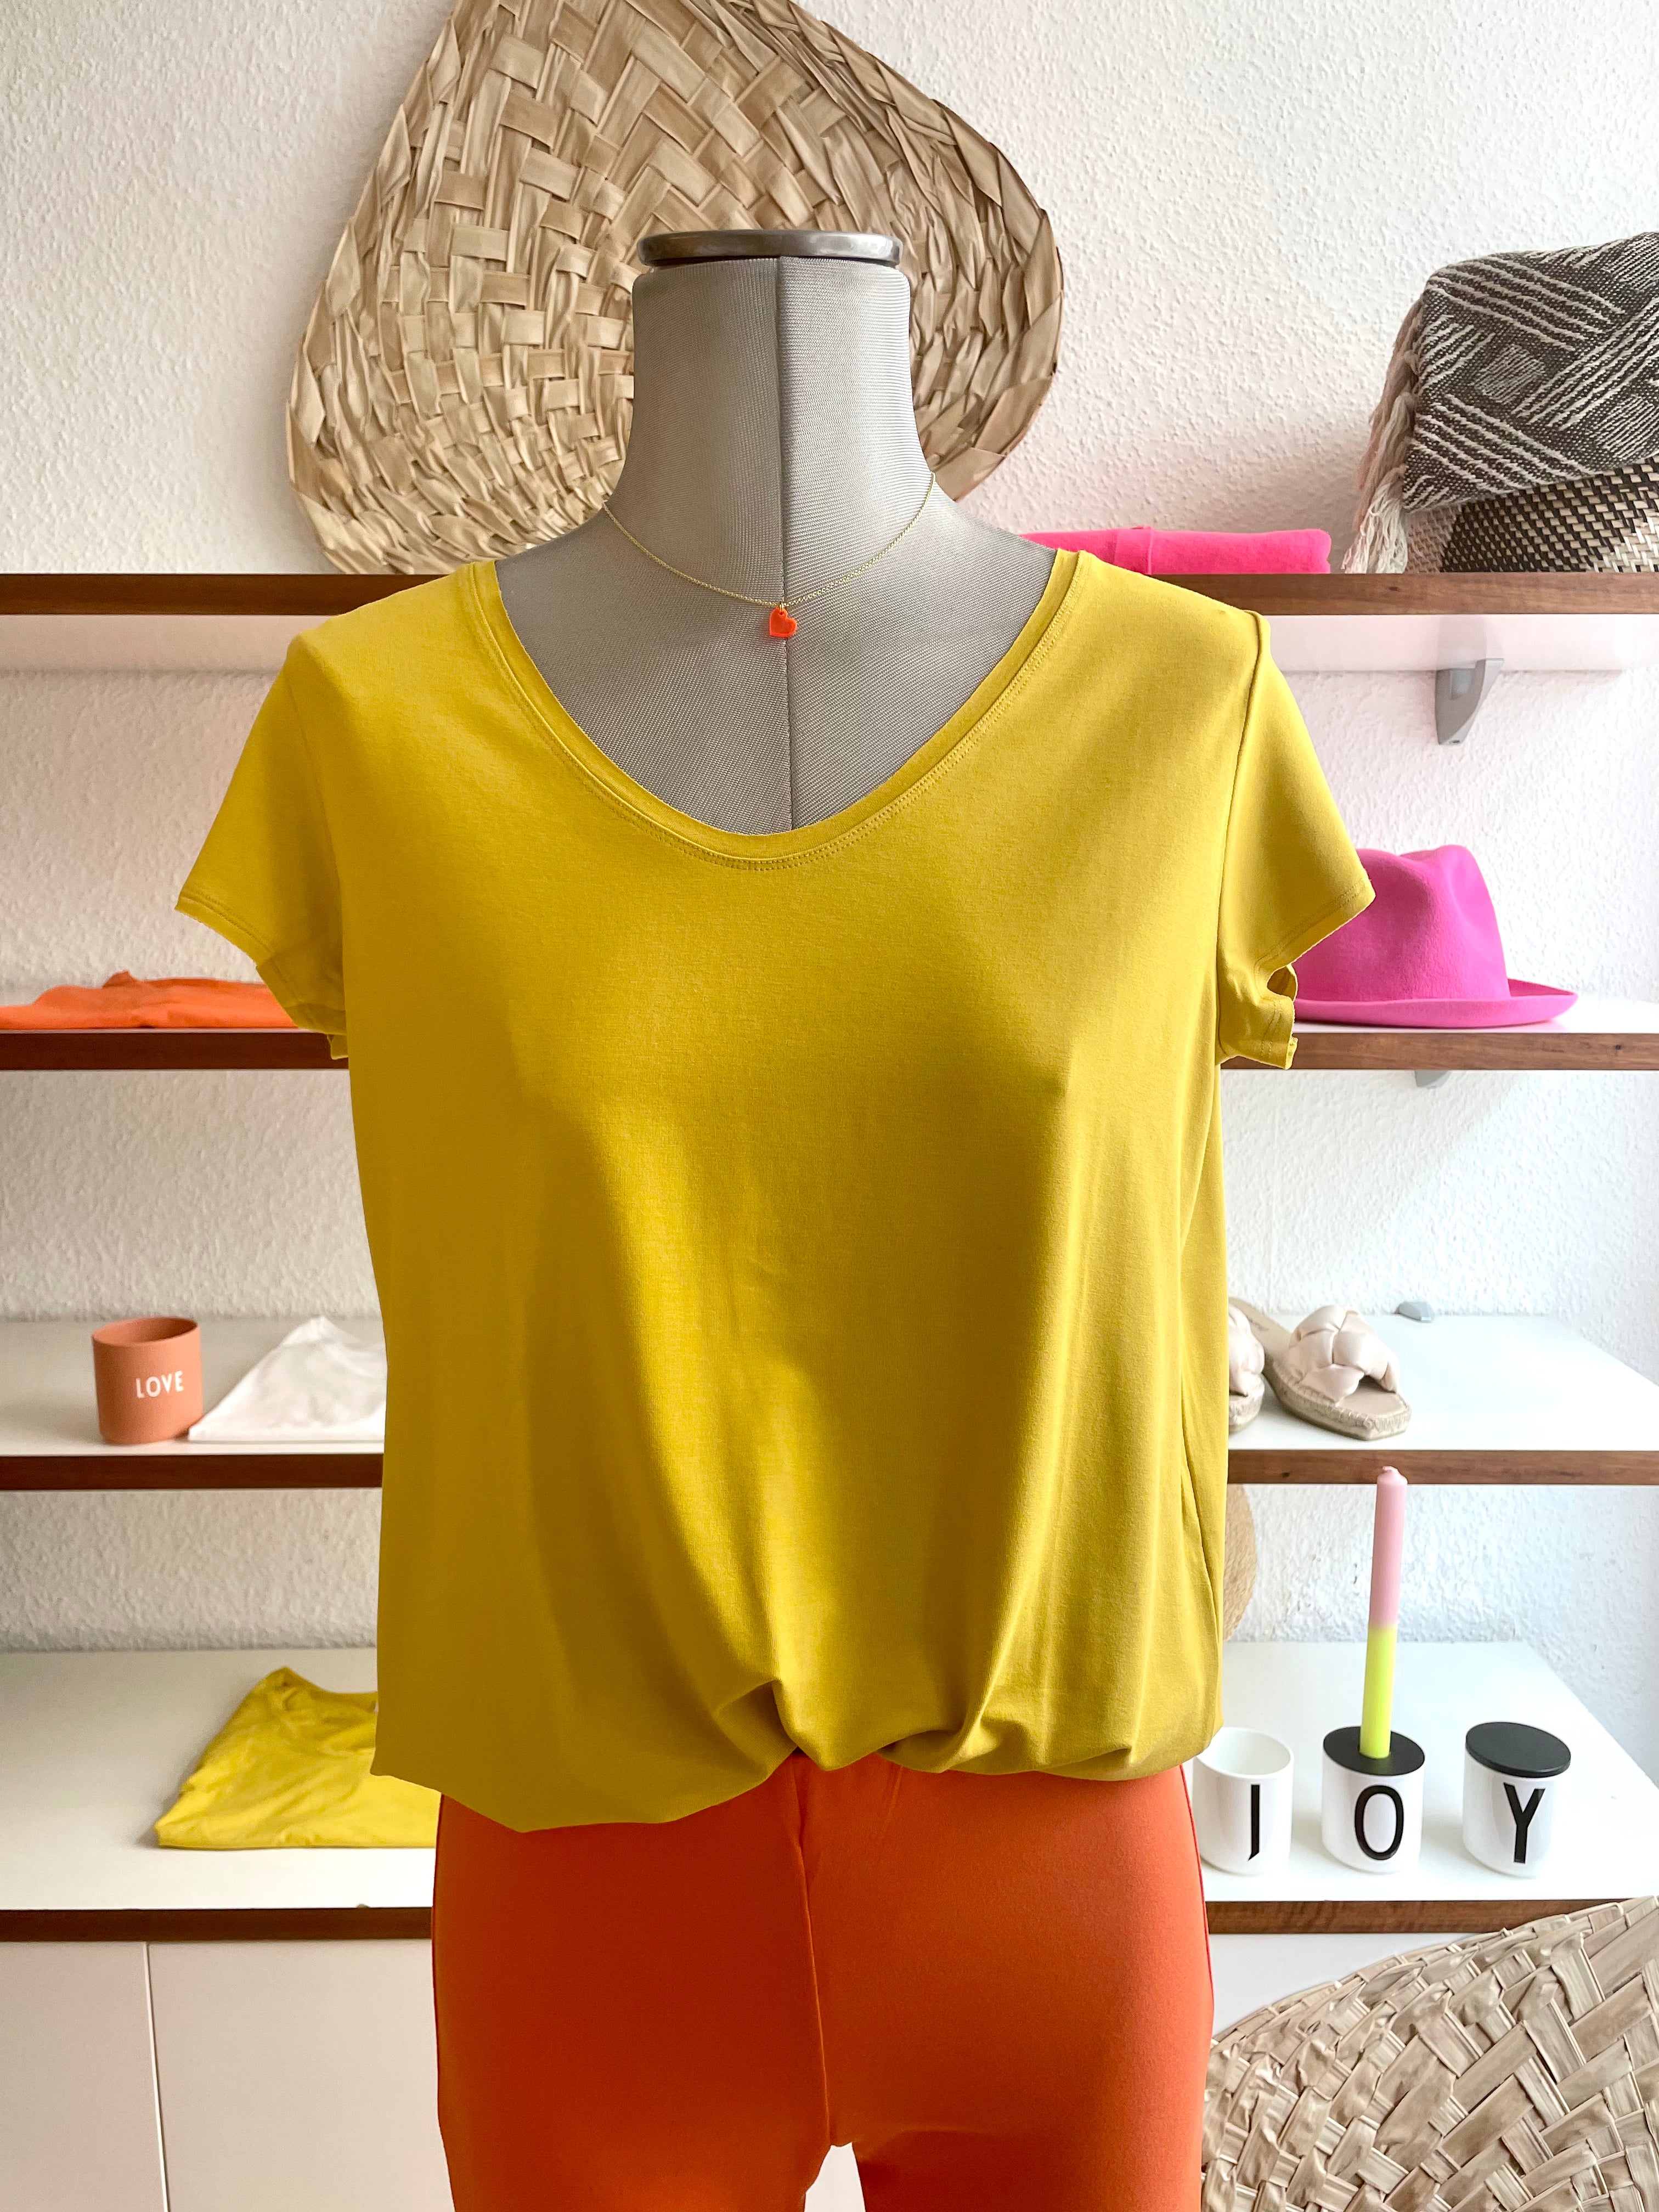 AURYN - Bambus T-Shirt kurzarm gelb, fair und nachhaltig produziert